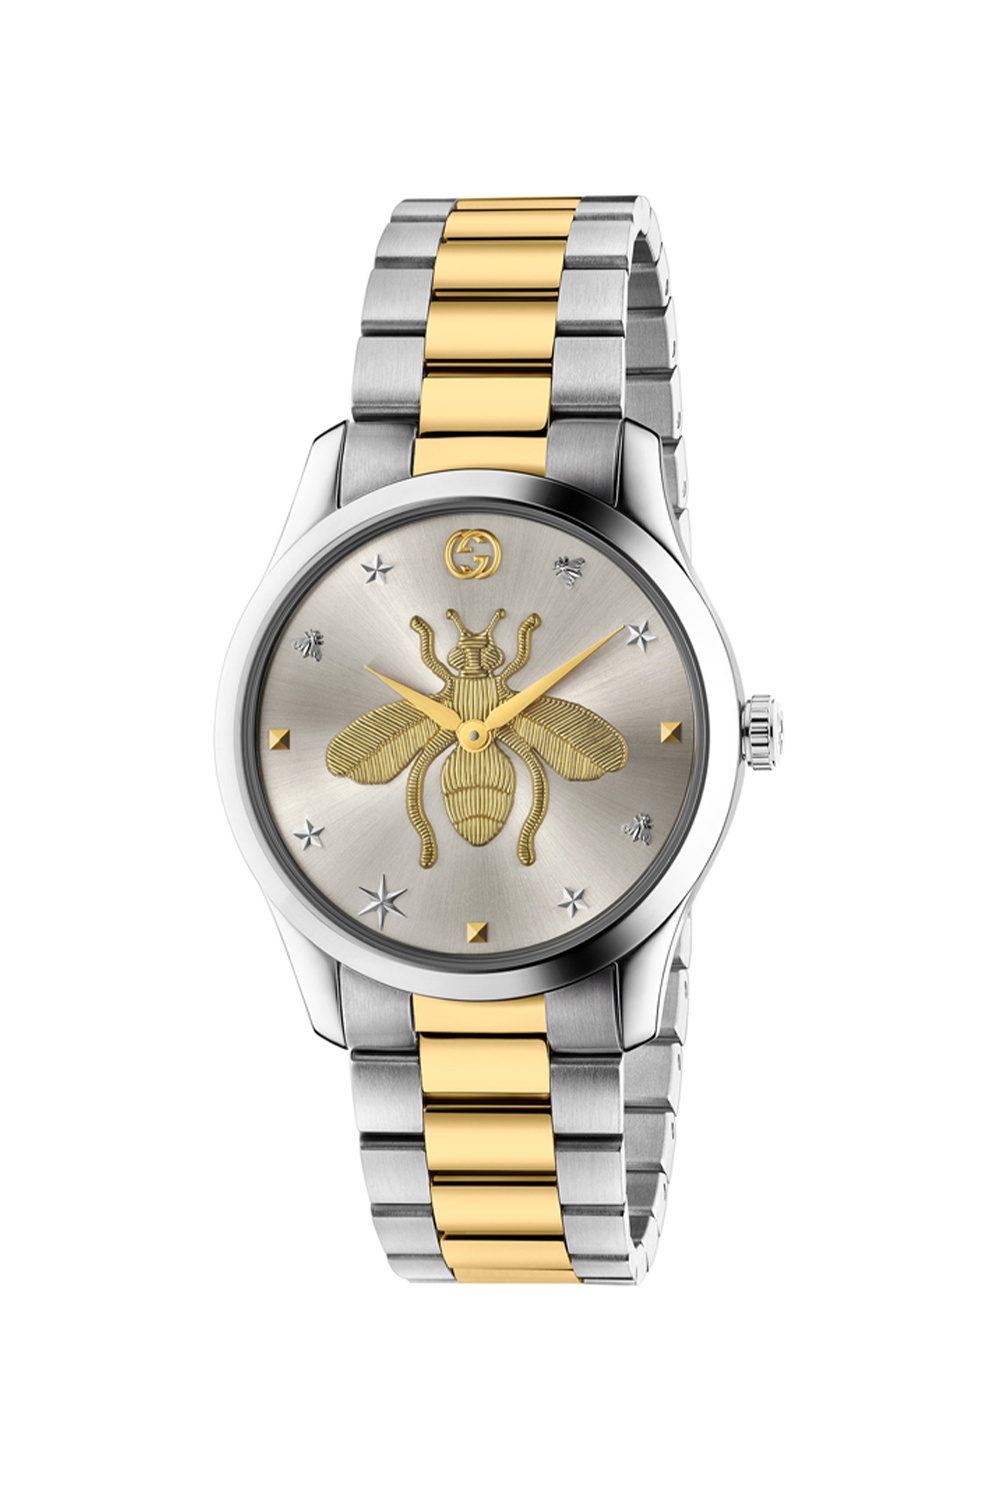 Gucci Bee motif watch